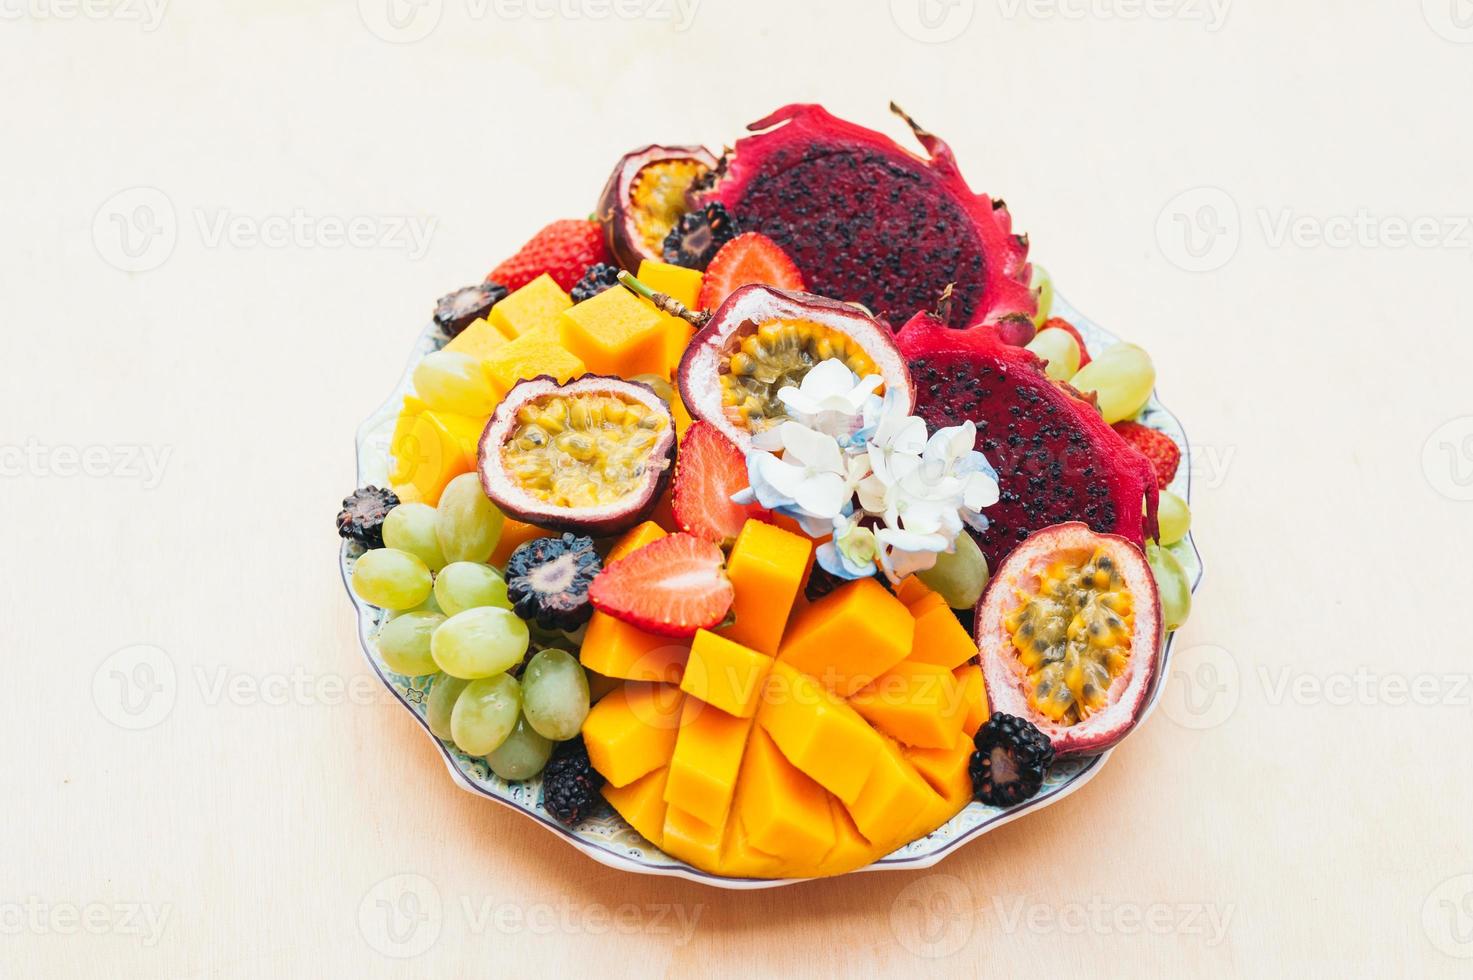 pitaya vermelha fruta do dragão, uvas, manga e morango no prato contra fundo branco. boa nutrição, frutas ricas em vitaminas. salada fresca. frutas tropicais foto